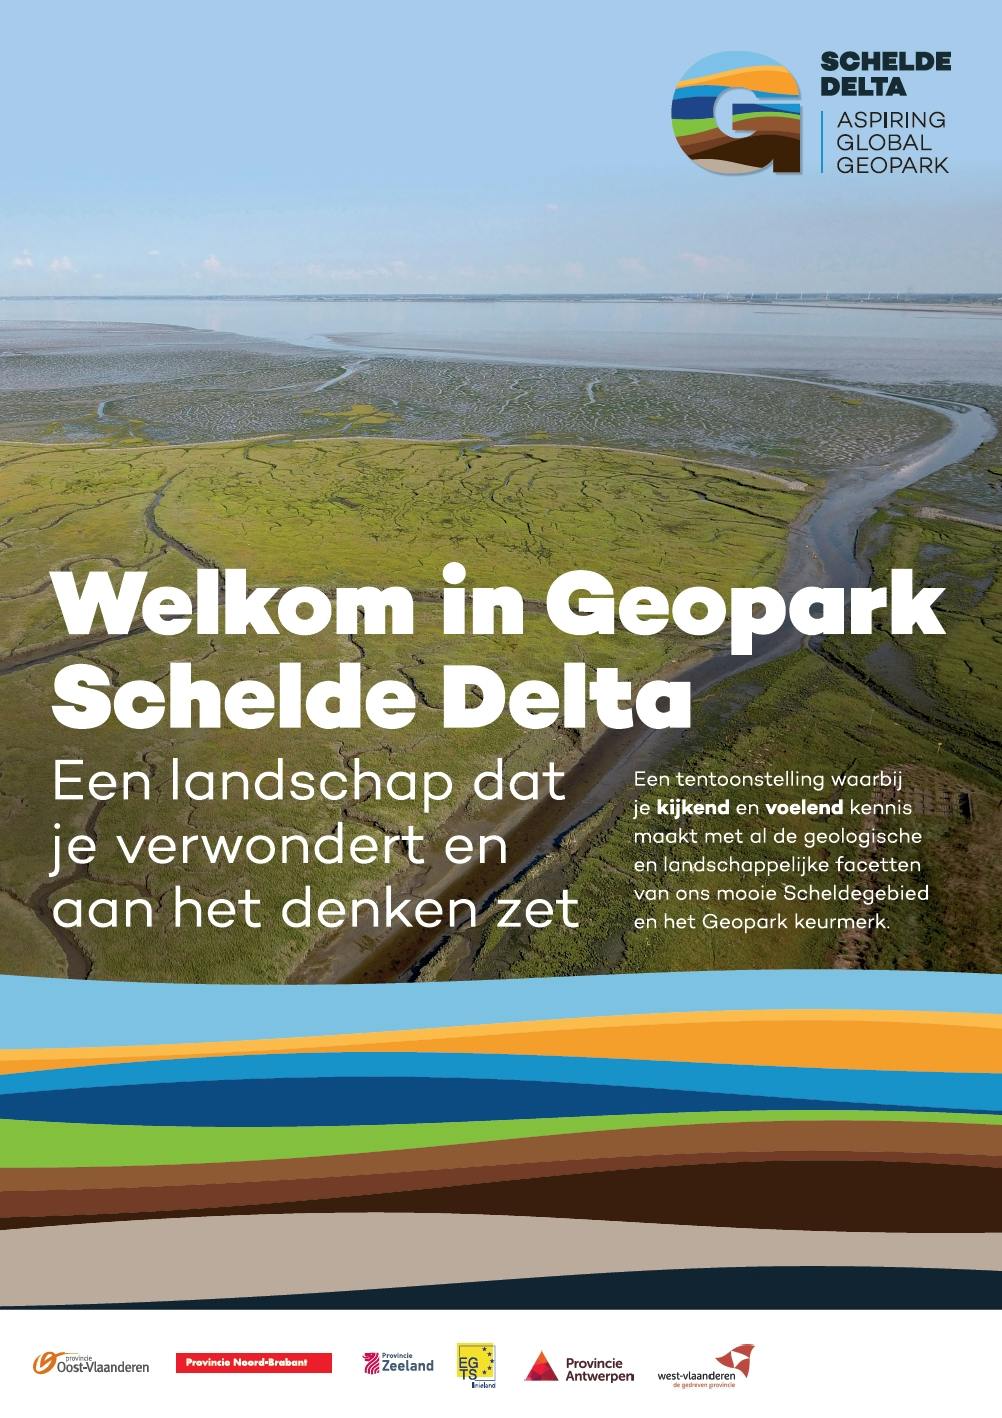 Welkom in Geopark Schelde Delta